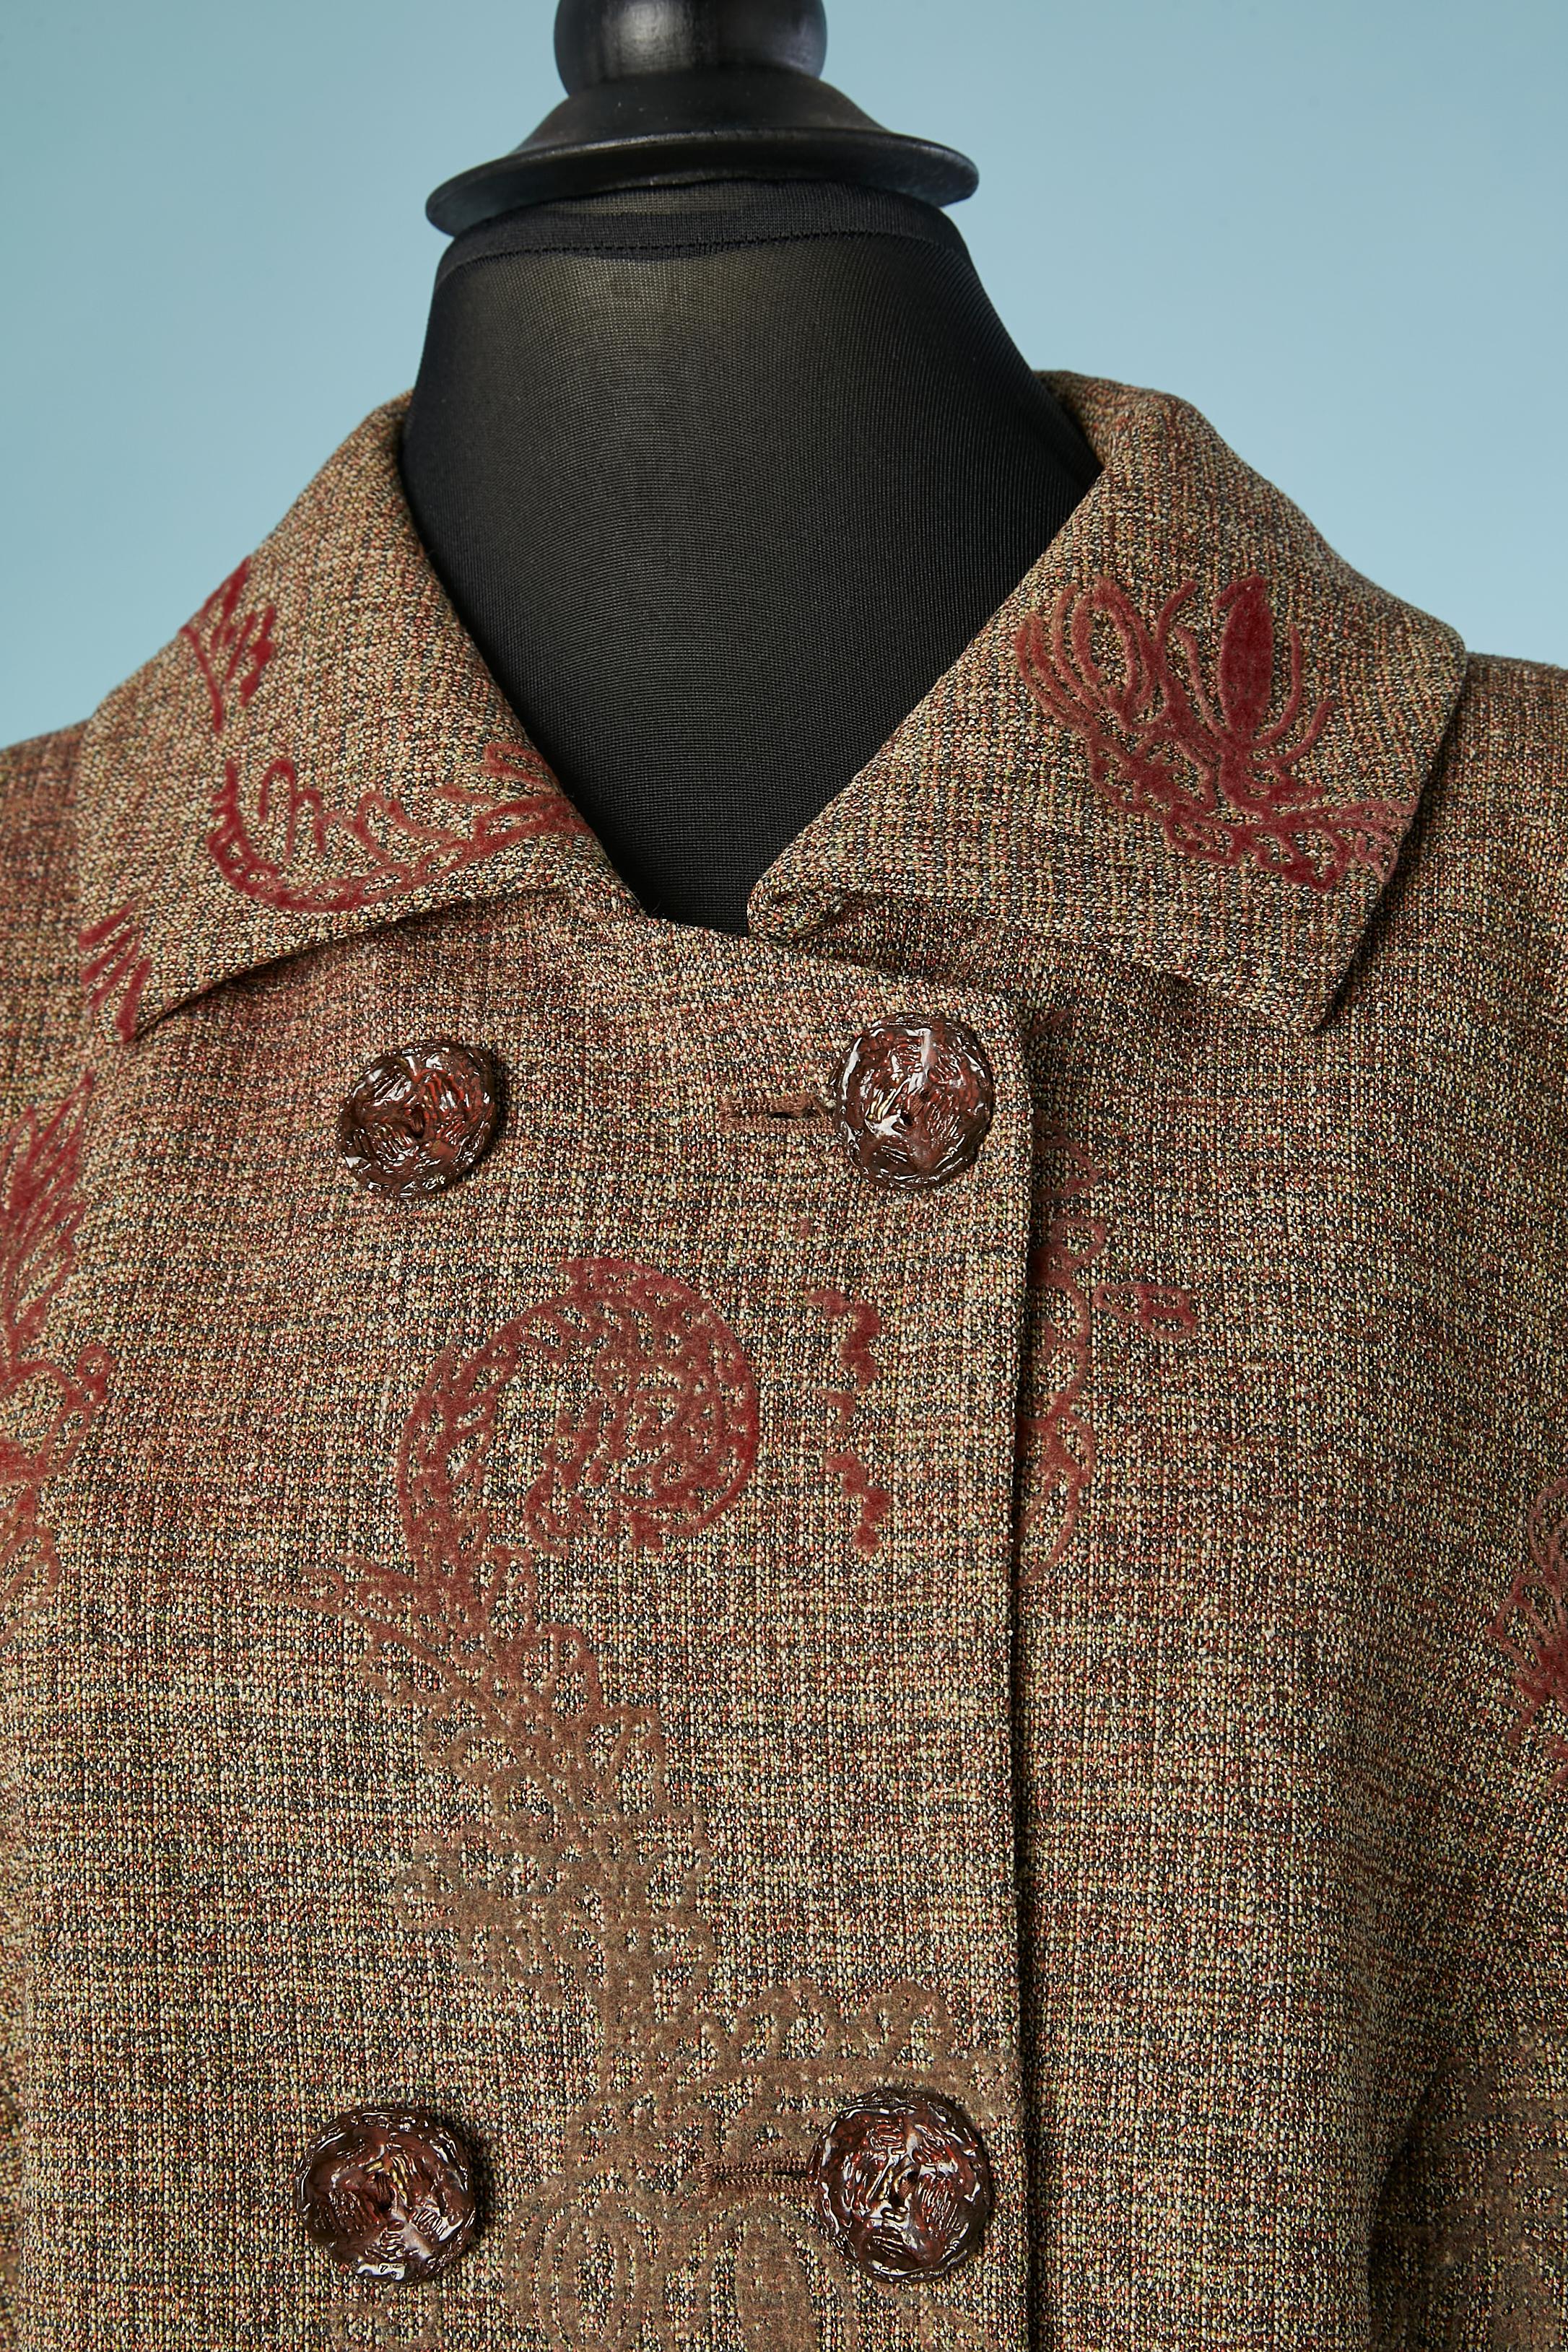 Veste à double boutonnage en laine tweed fine avec motif en feutre. Composition du tissu : 92% laine, 8% nylon. Doublure en rayonne Jacquard. 
Taille 48